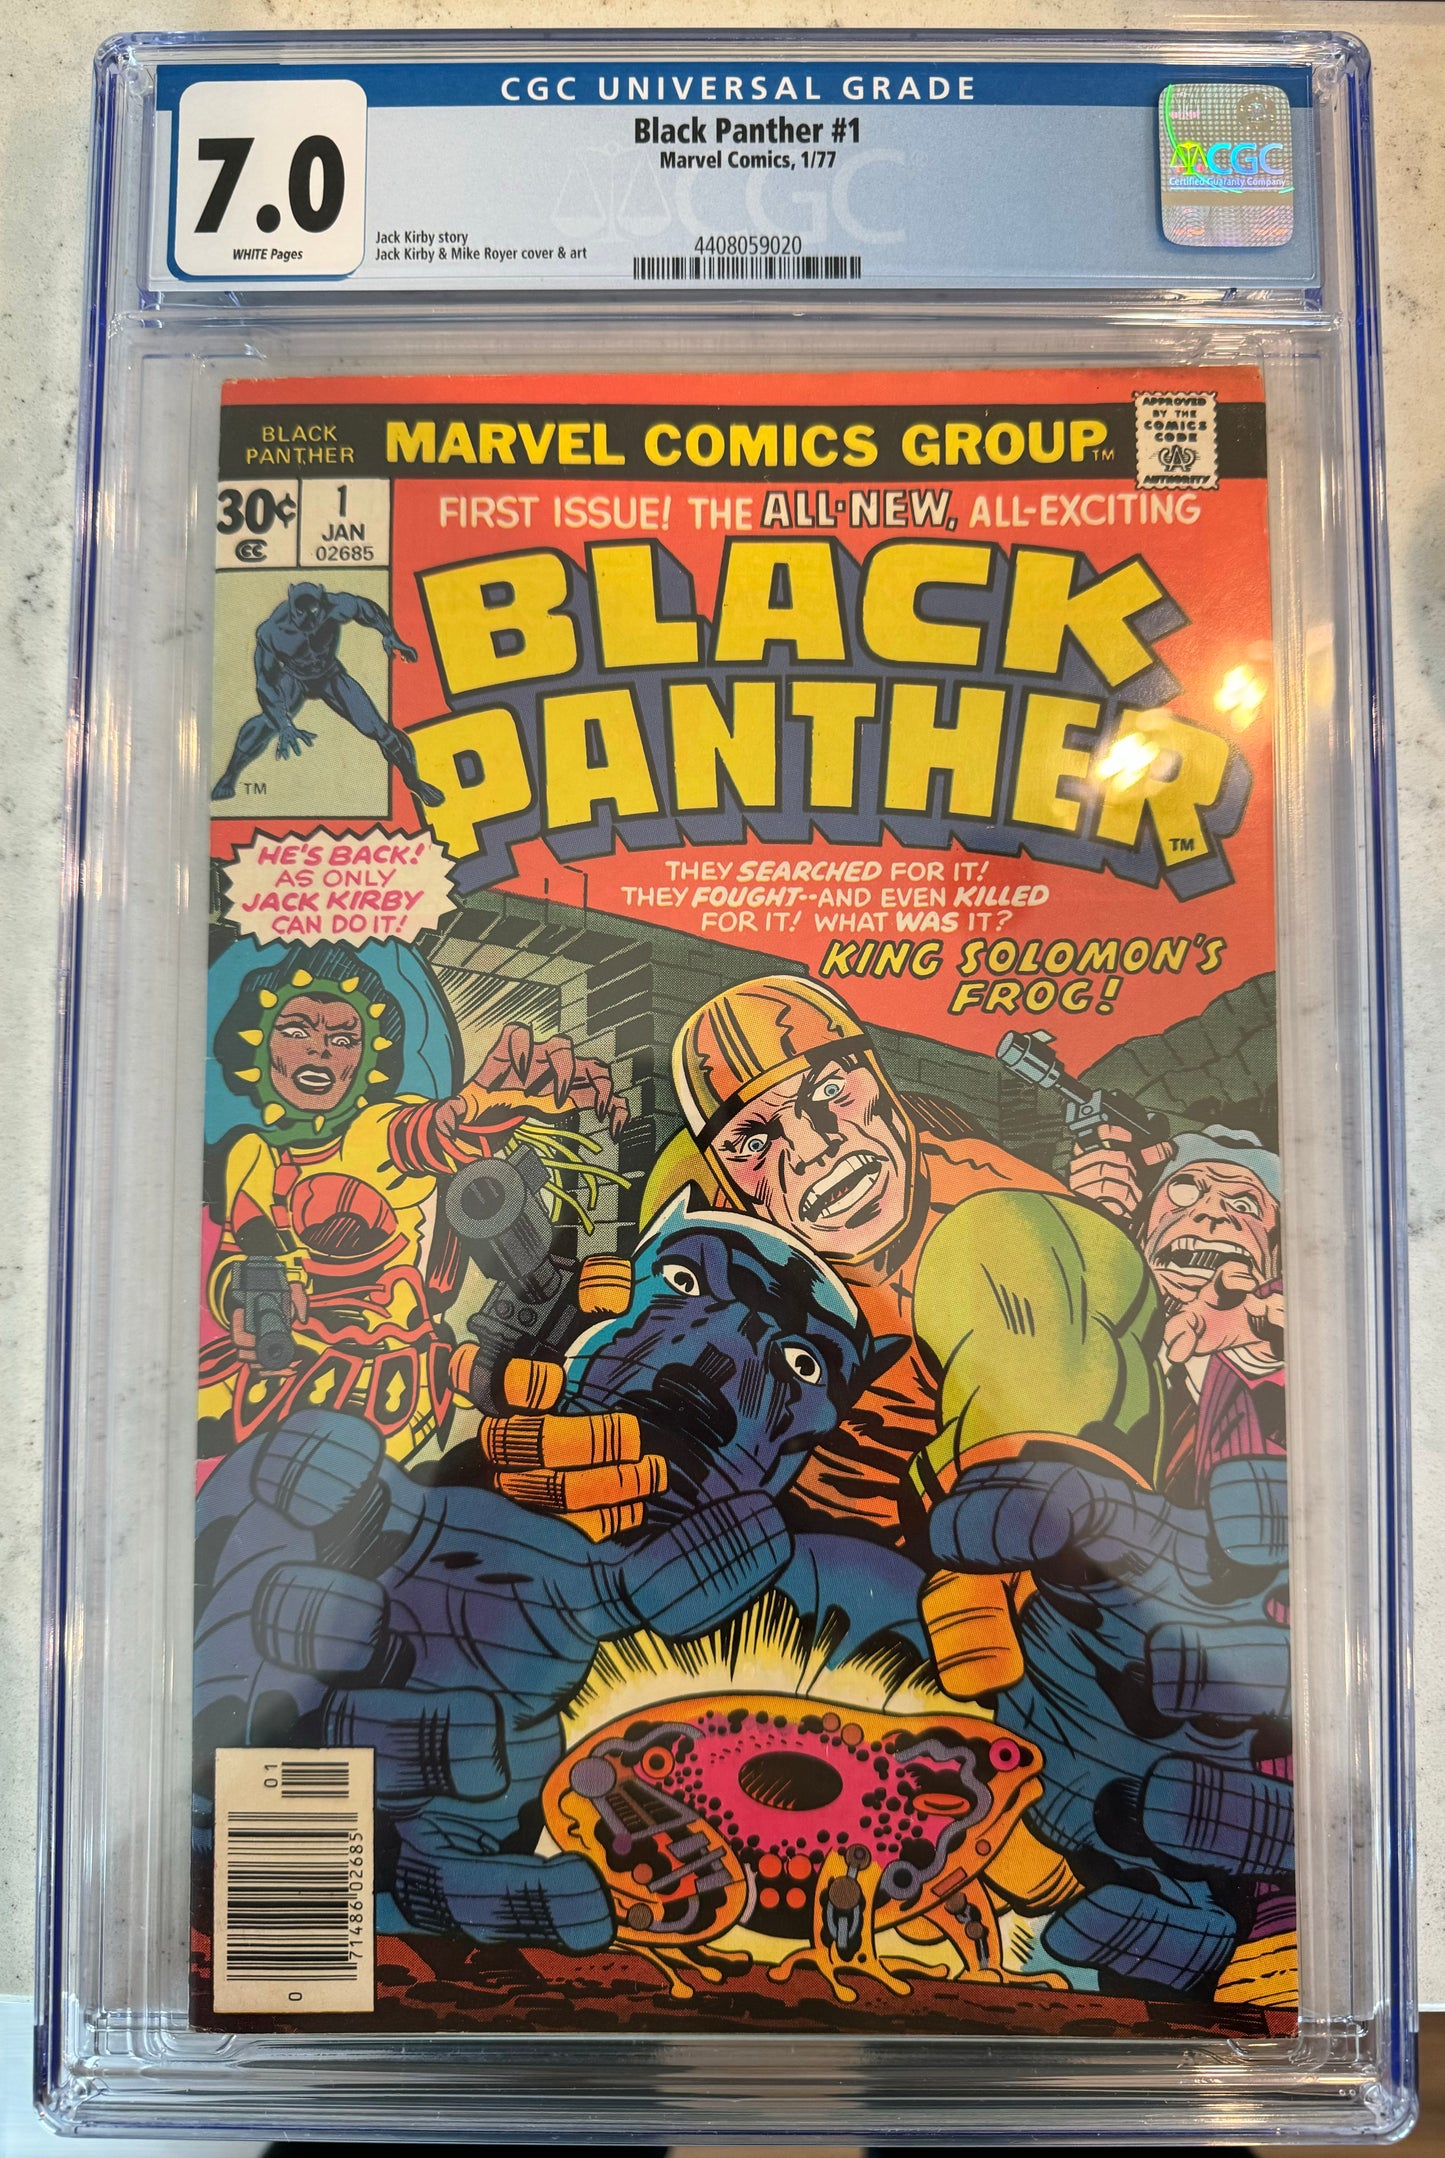 Black Panther #1 CGC 7.0 (1977 Series)